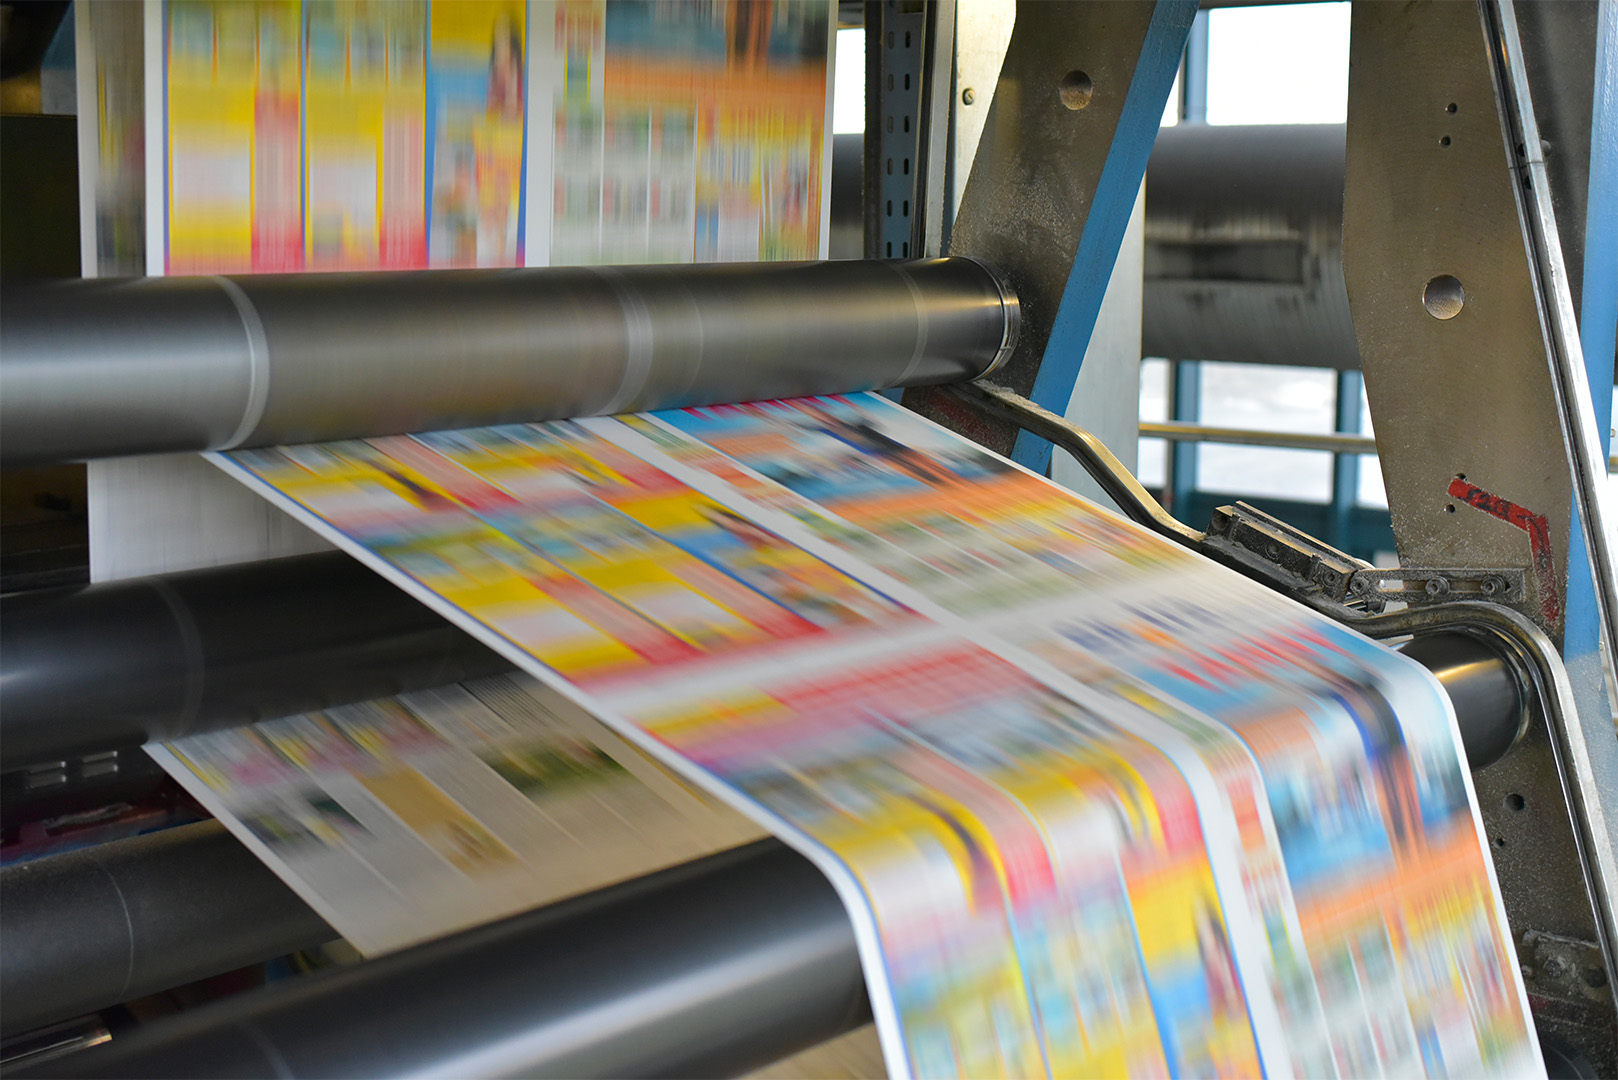 dpi di stampa | risoluzione stampa | dpi stampante | stampa ecosostenibile | stampa green | stampa a basso impatto ambientale